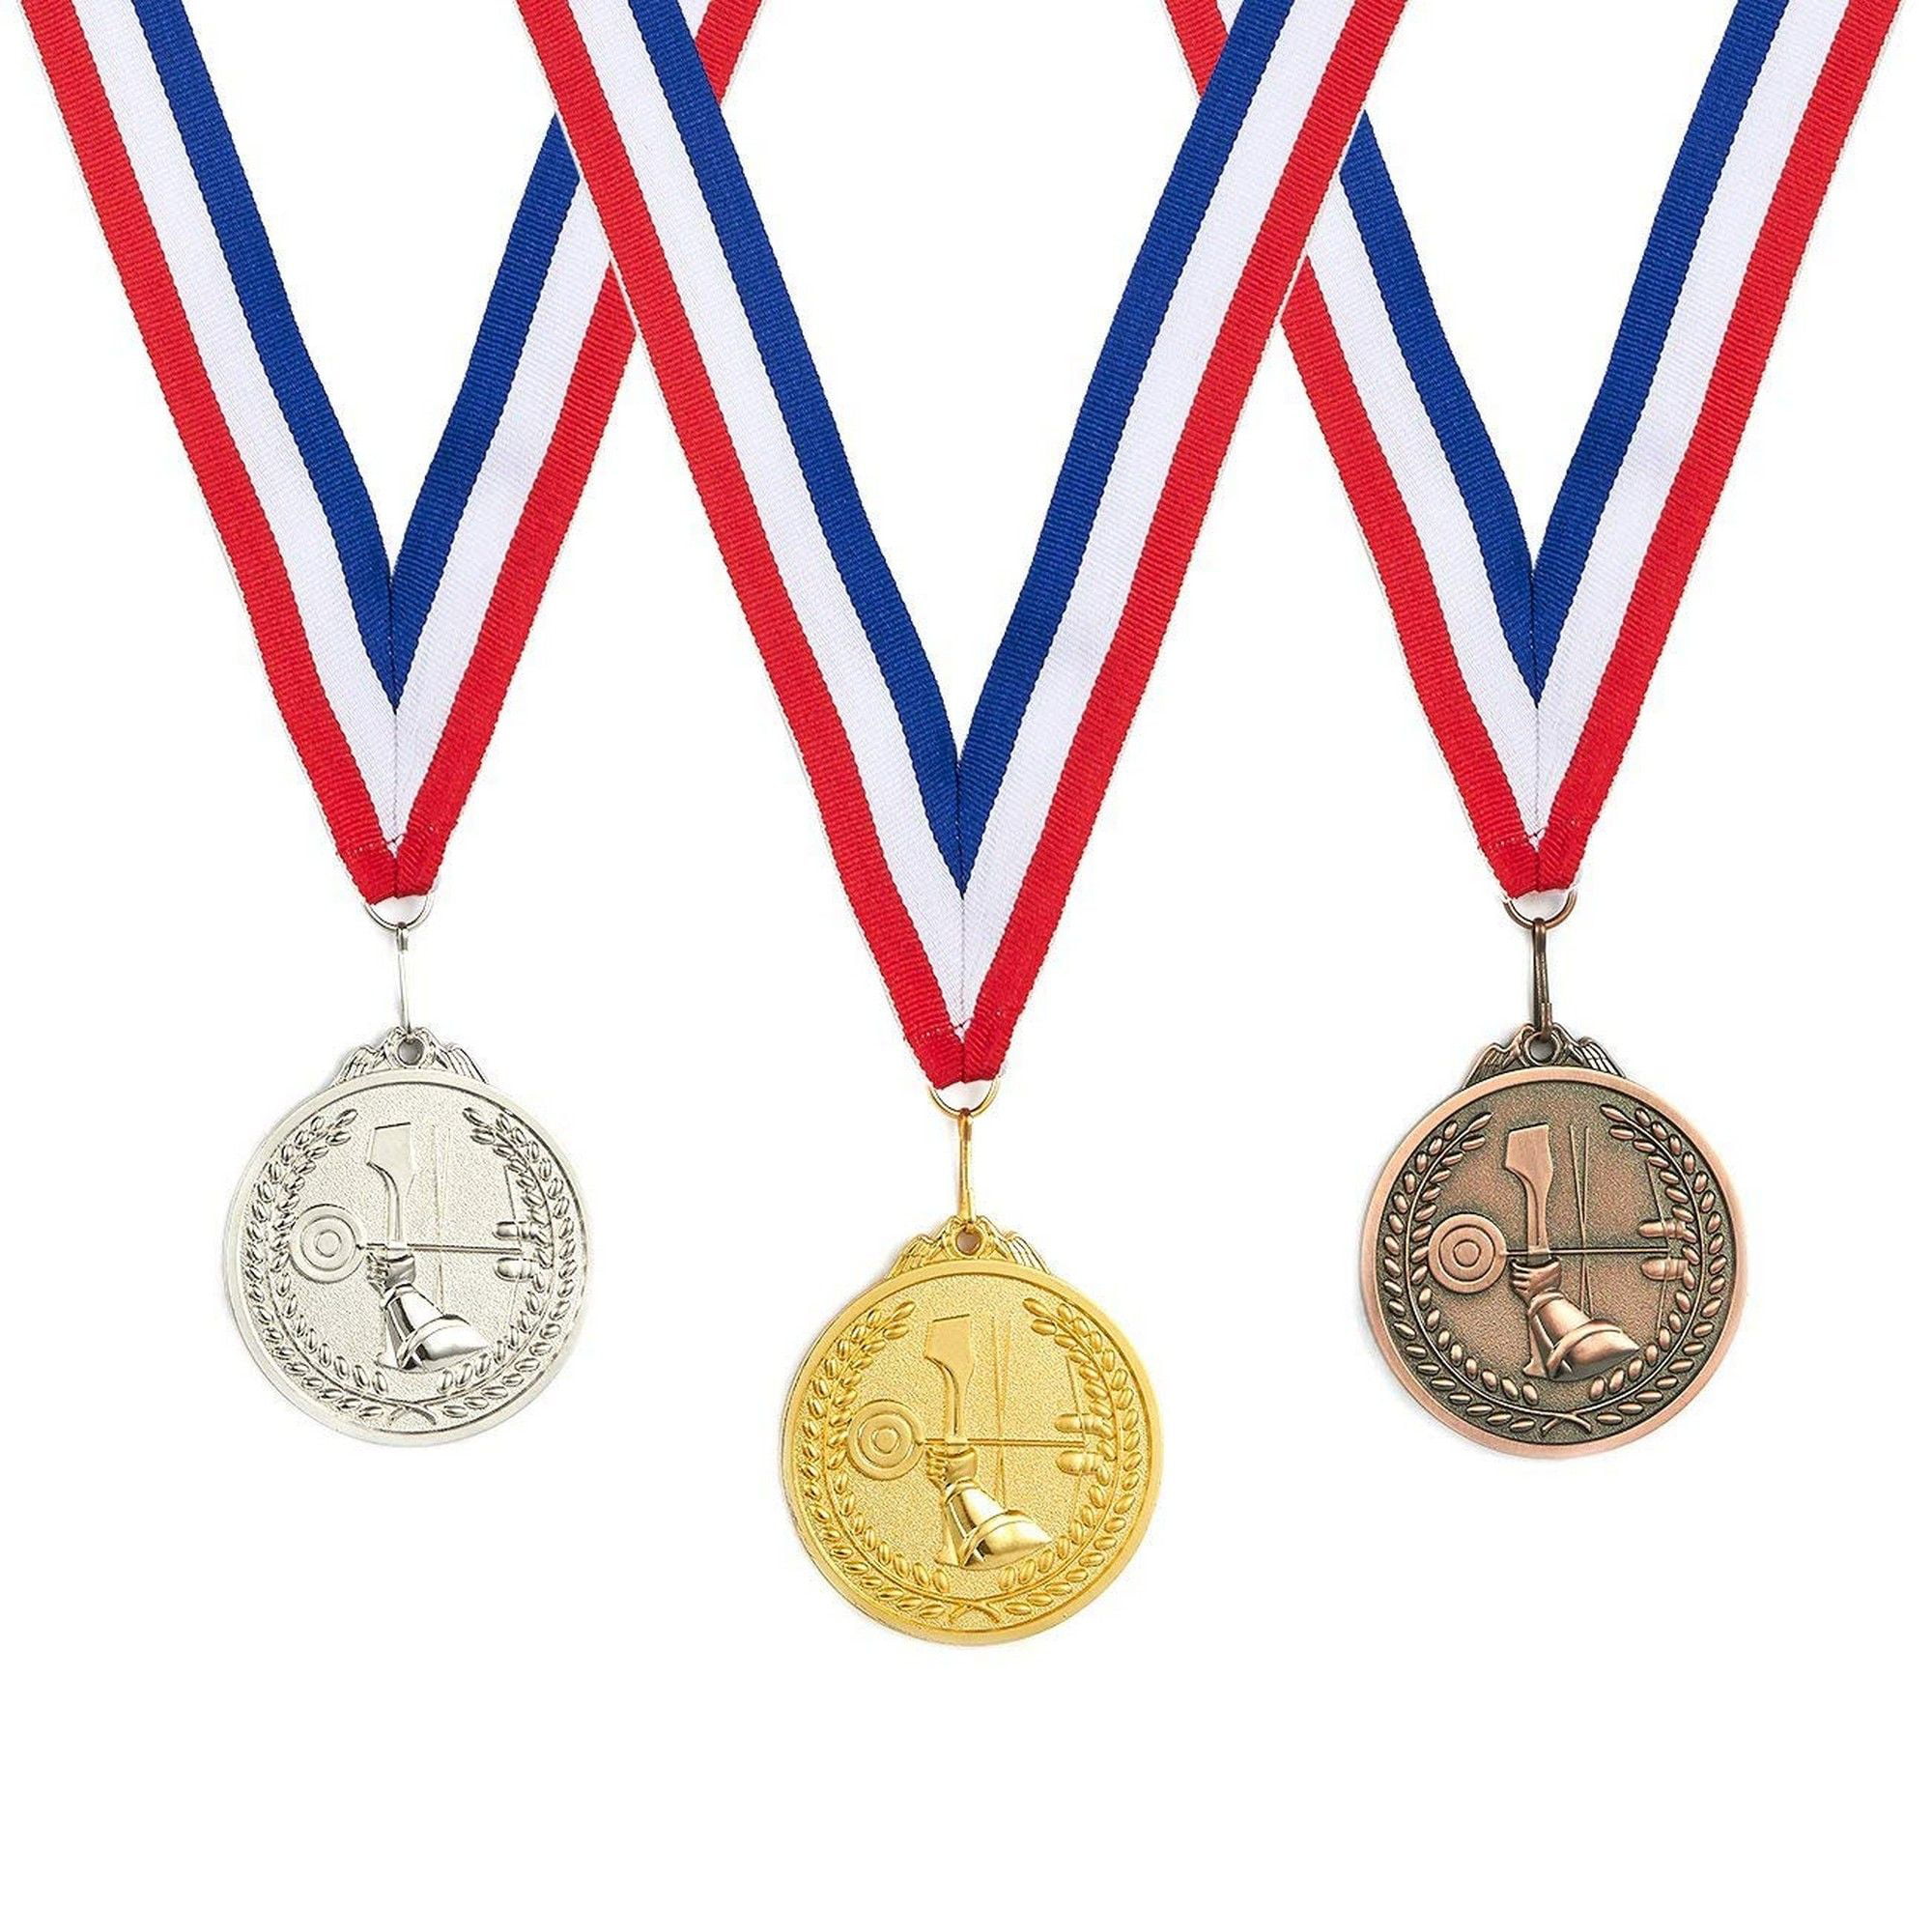 Medal get. Медали спортивные. Спортивные награды. Спортивные медали на прозрачном фоне. Медали для детей спортивные.